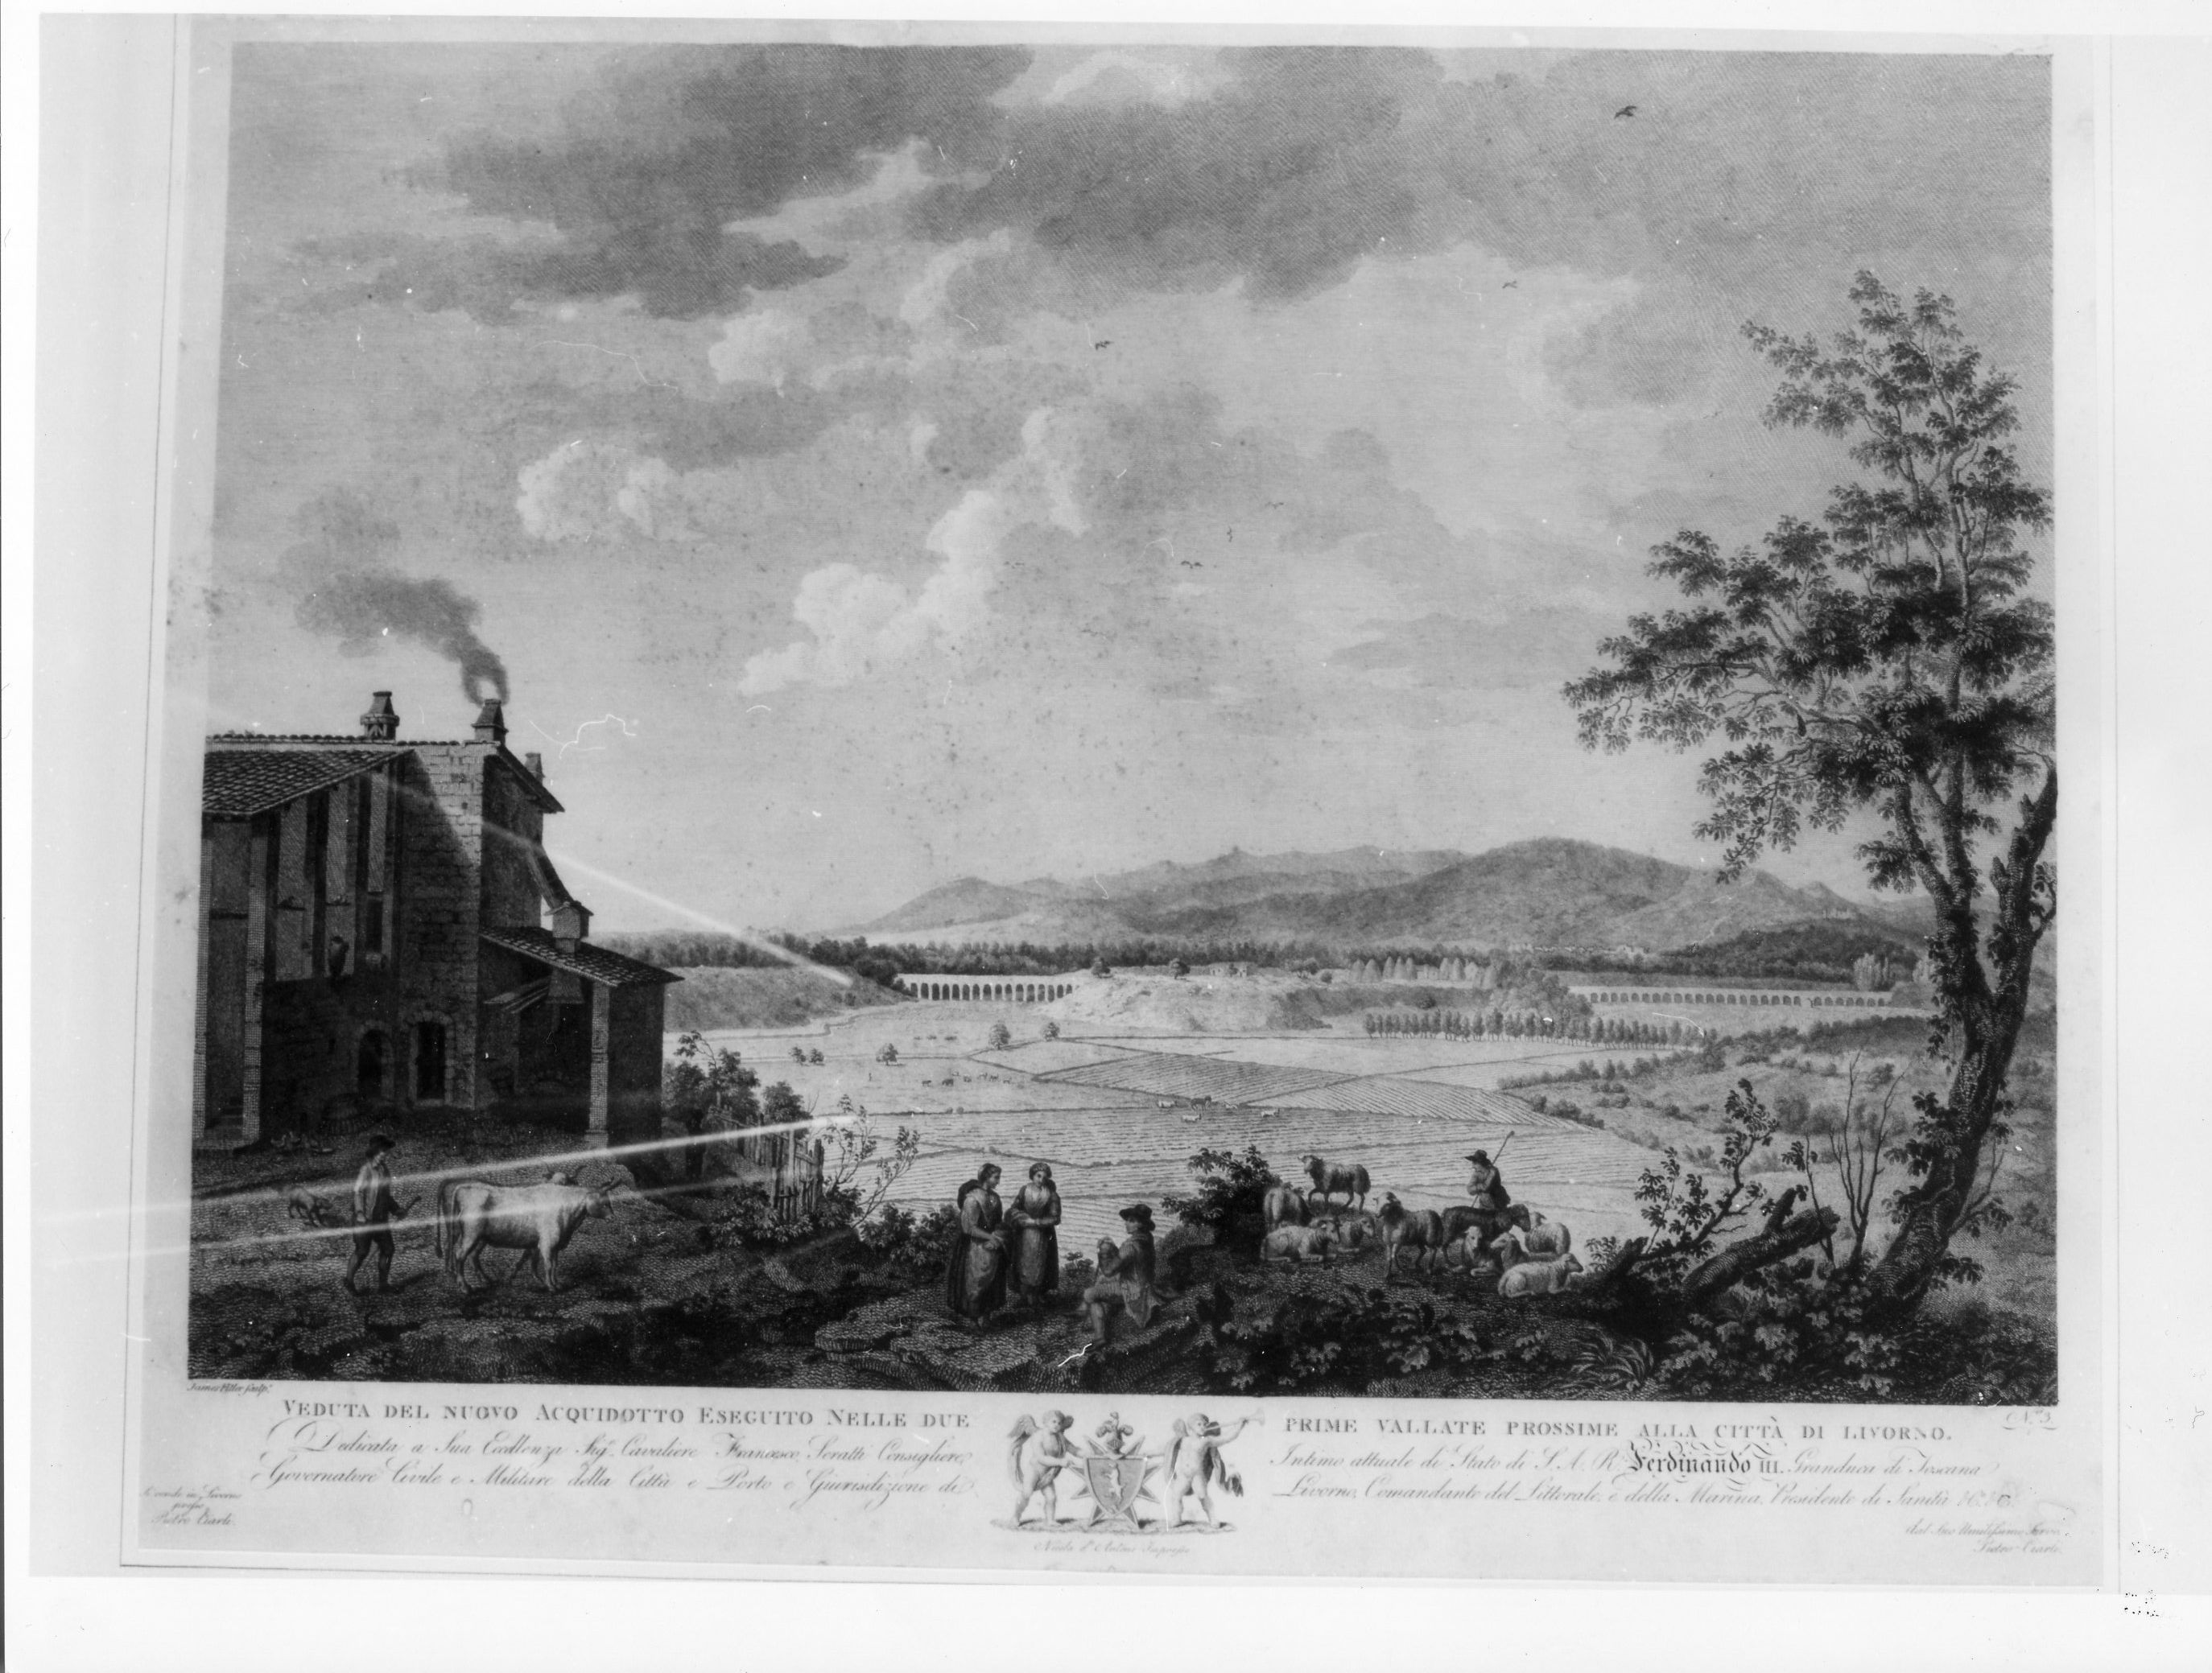 Veduta del nuovo Acquedotto esegiuto nelle due prime vallate prossime alla città di Livorno, veduta di città (stampa) di D'Antoni Andrea, Fittler James (sec. XIX)